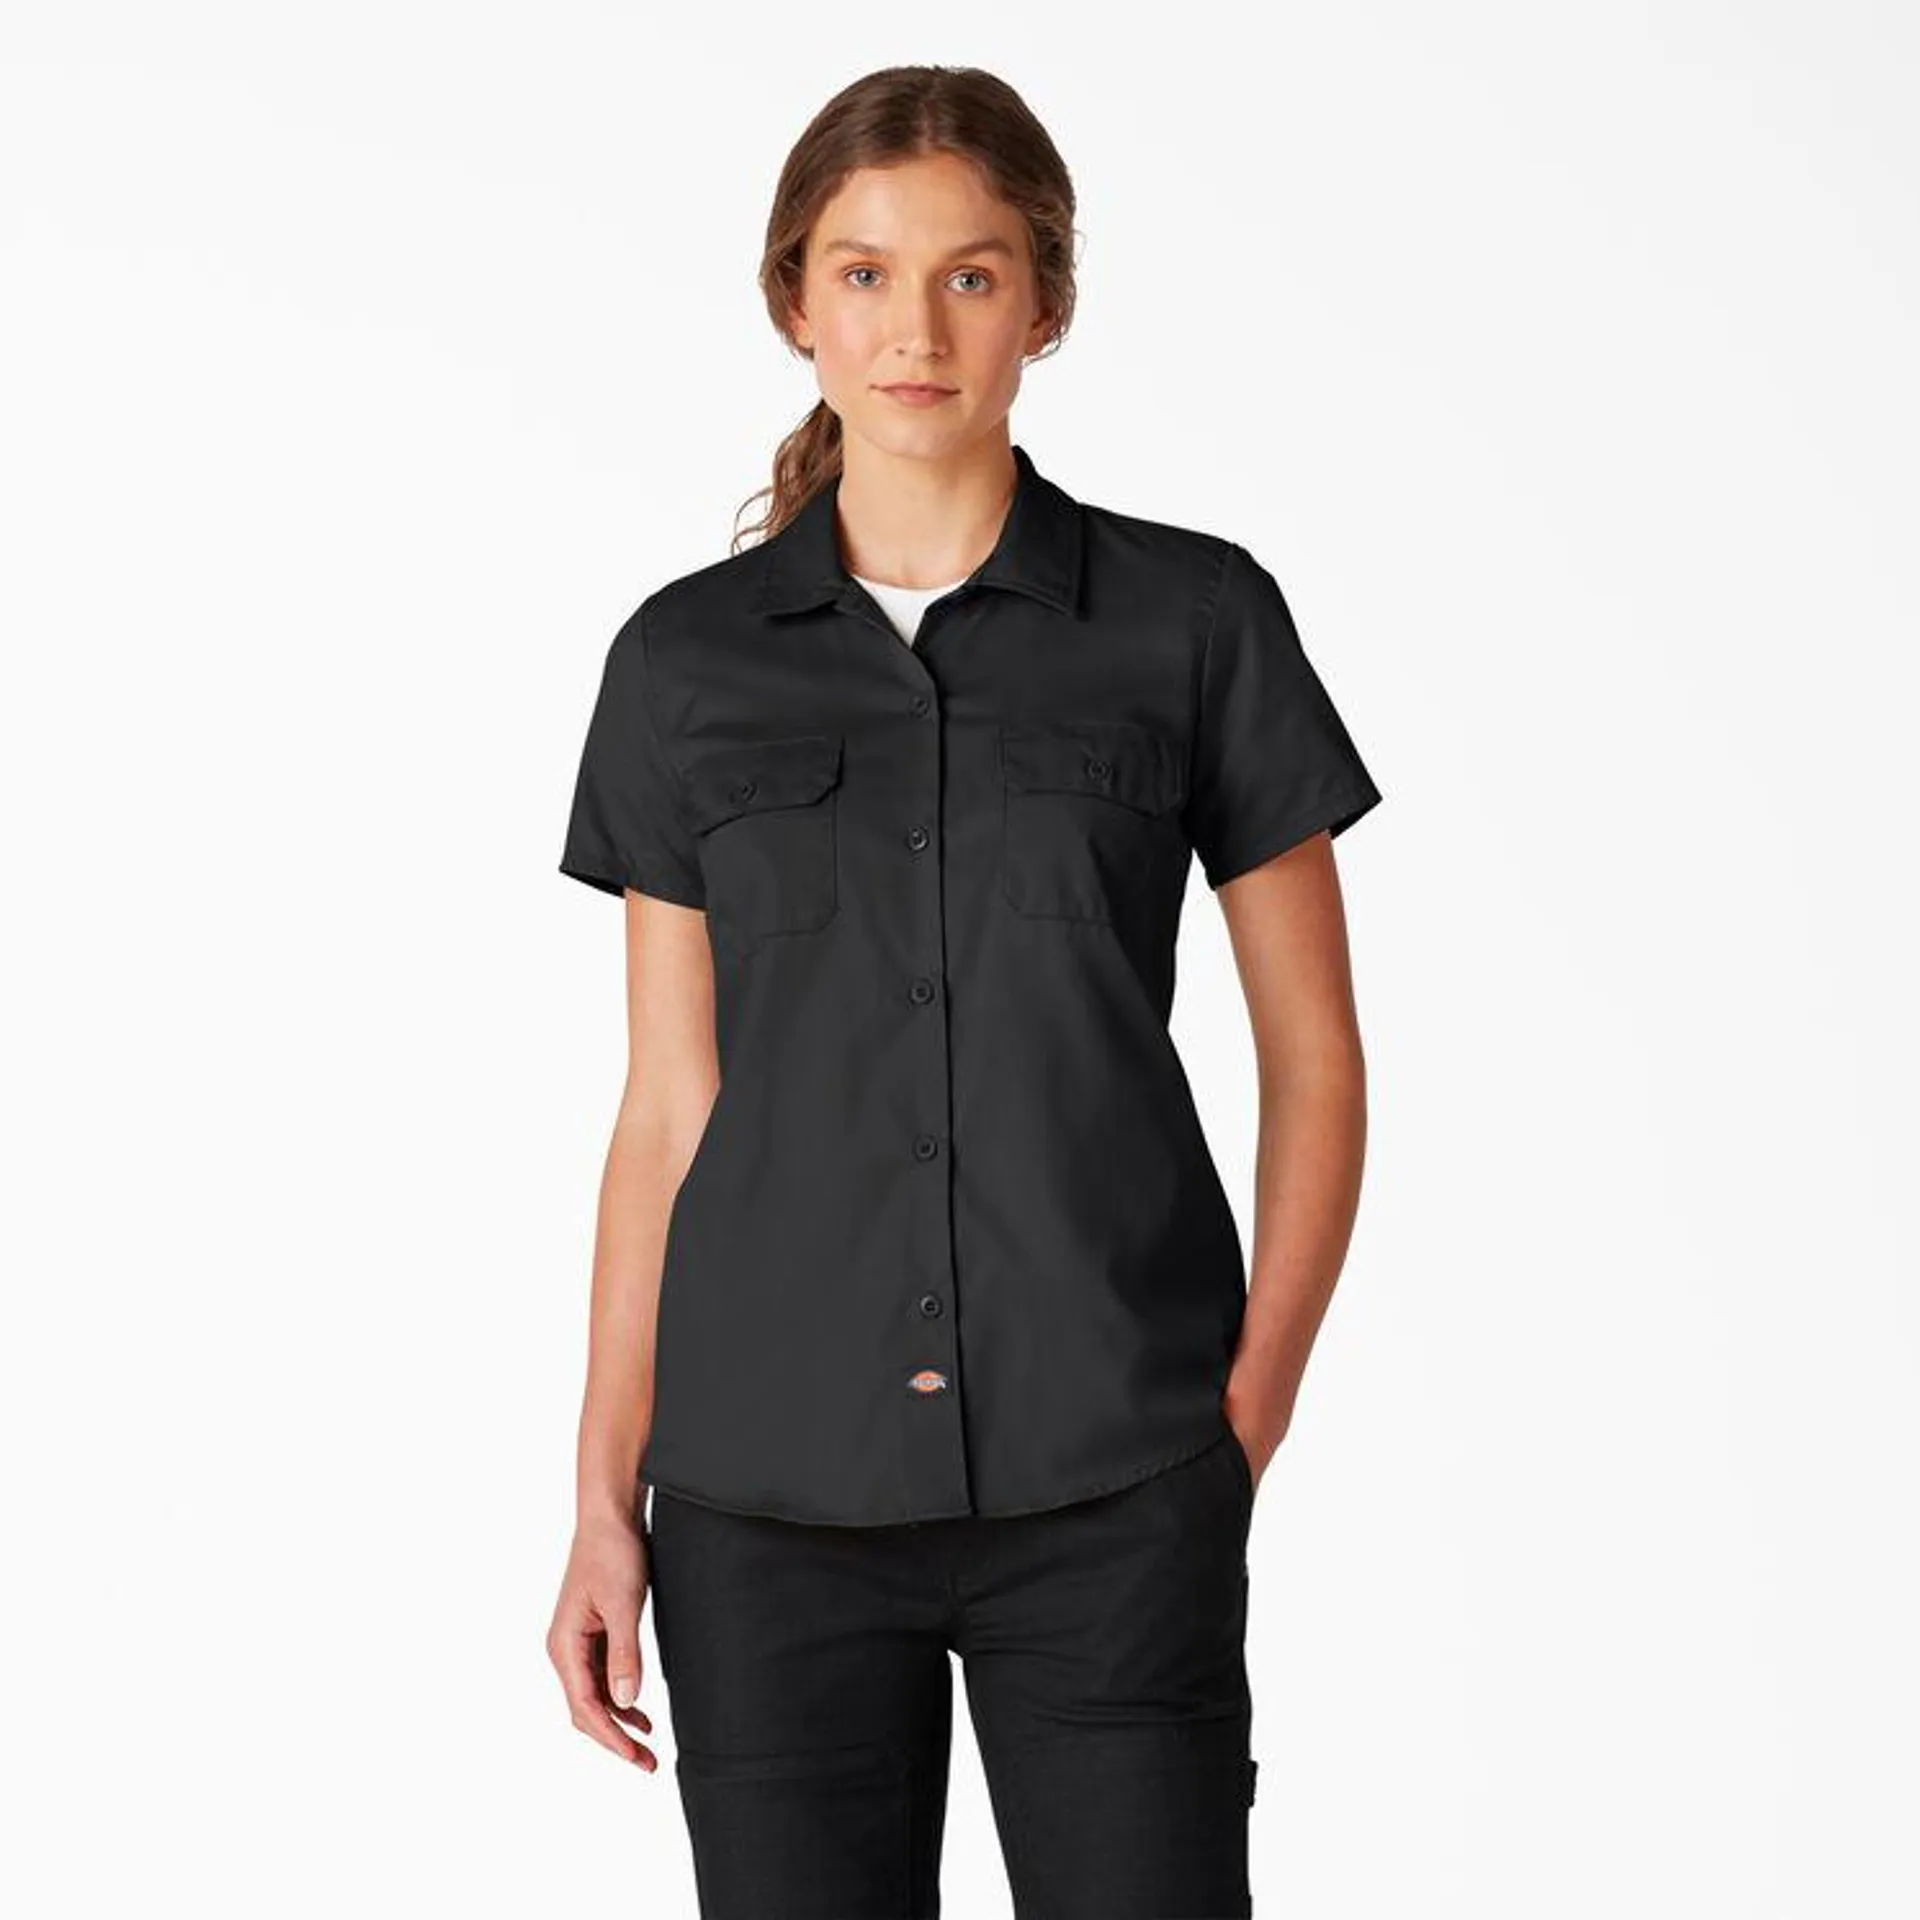 Women's FLEX Short Sleeve Work Shirt, Black